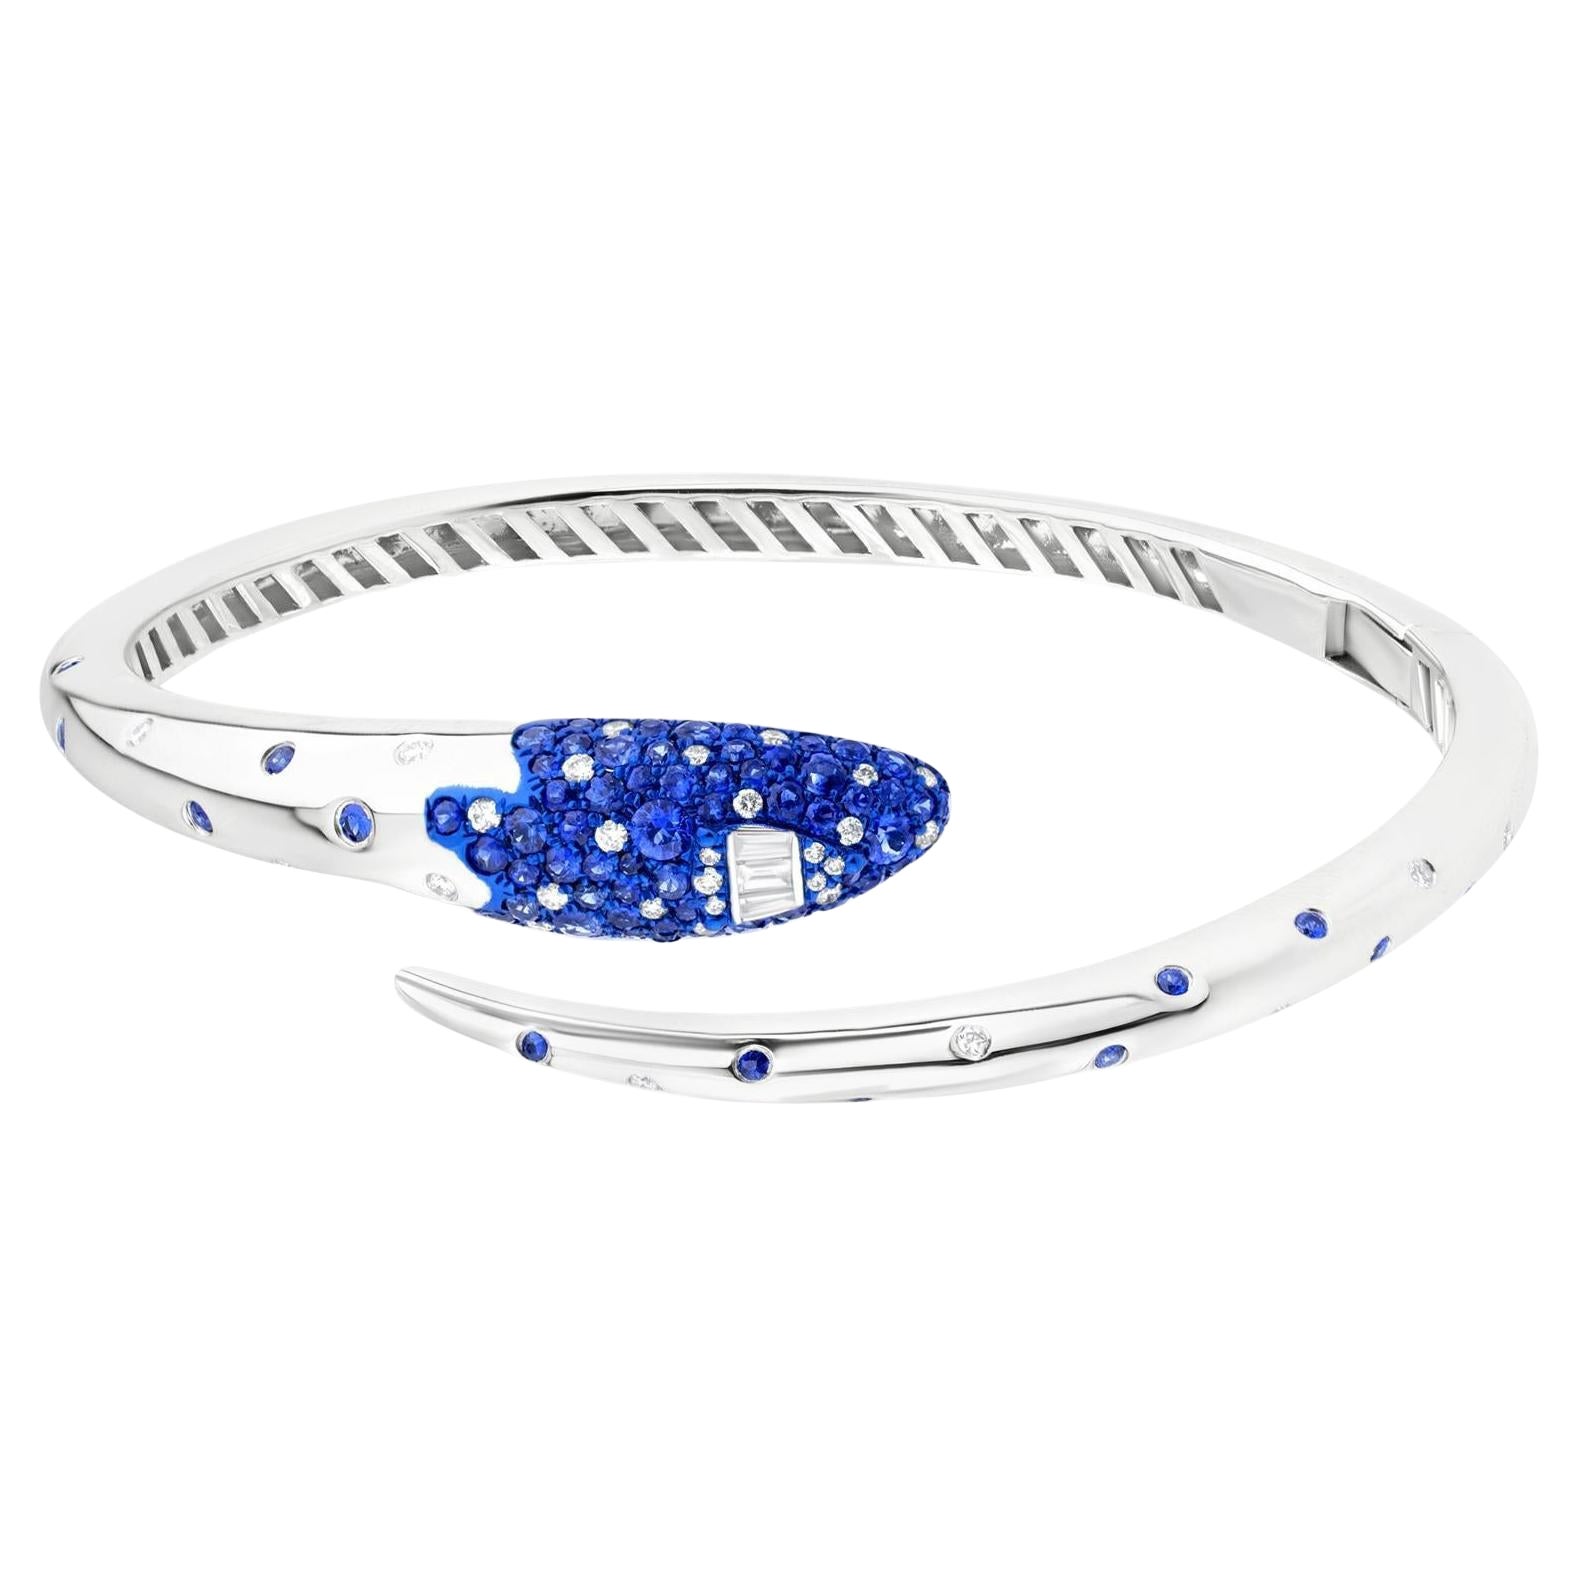 Nigaam 1.92Cttw. Sapphire and Diamond Serpentine Cuff Bracelet in 18K White Gold